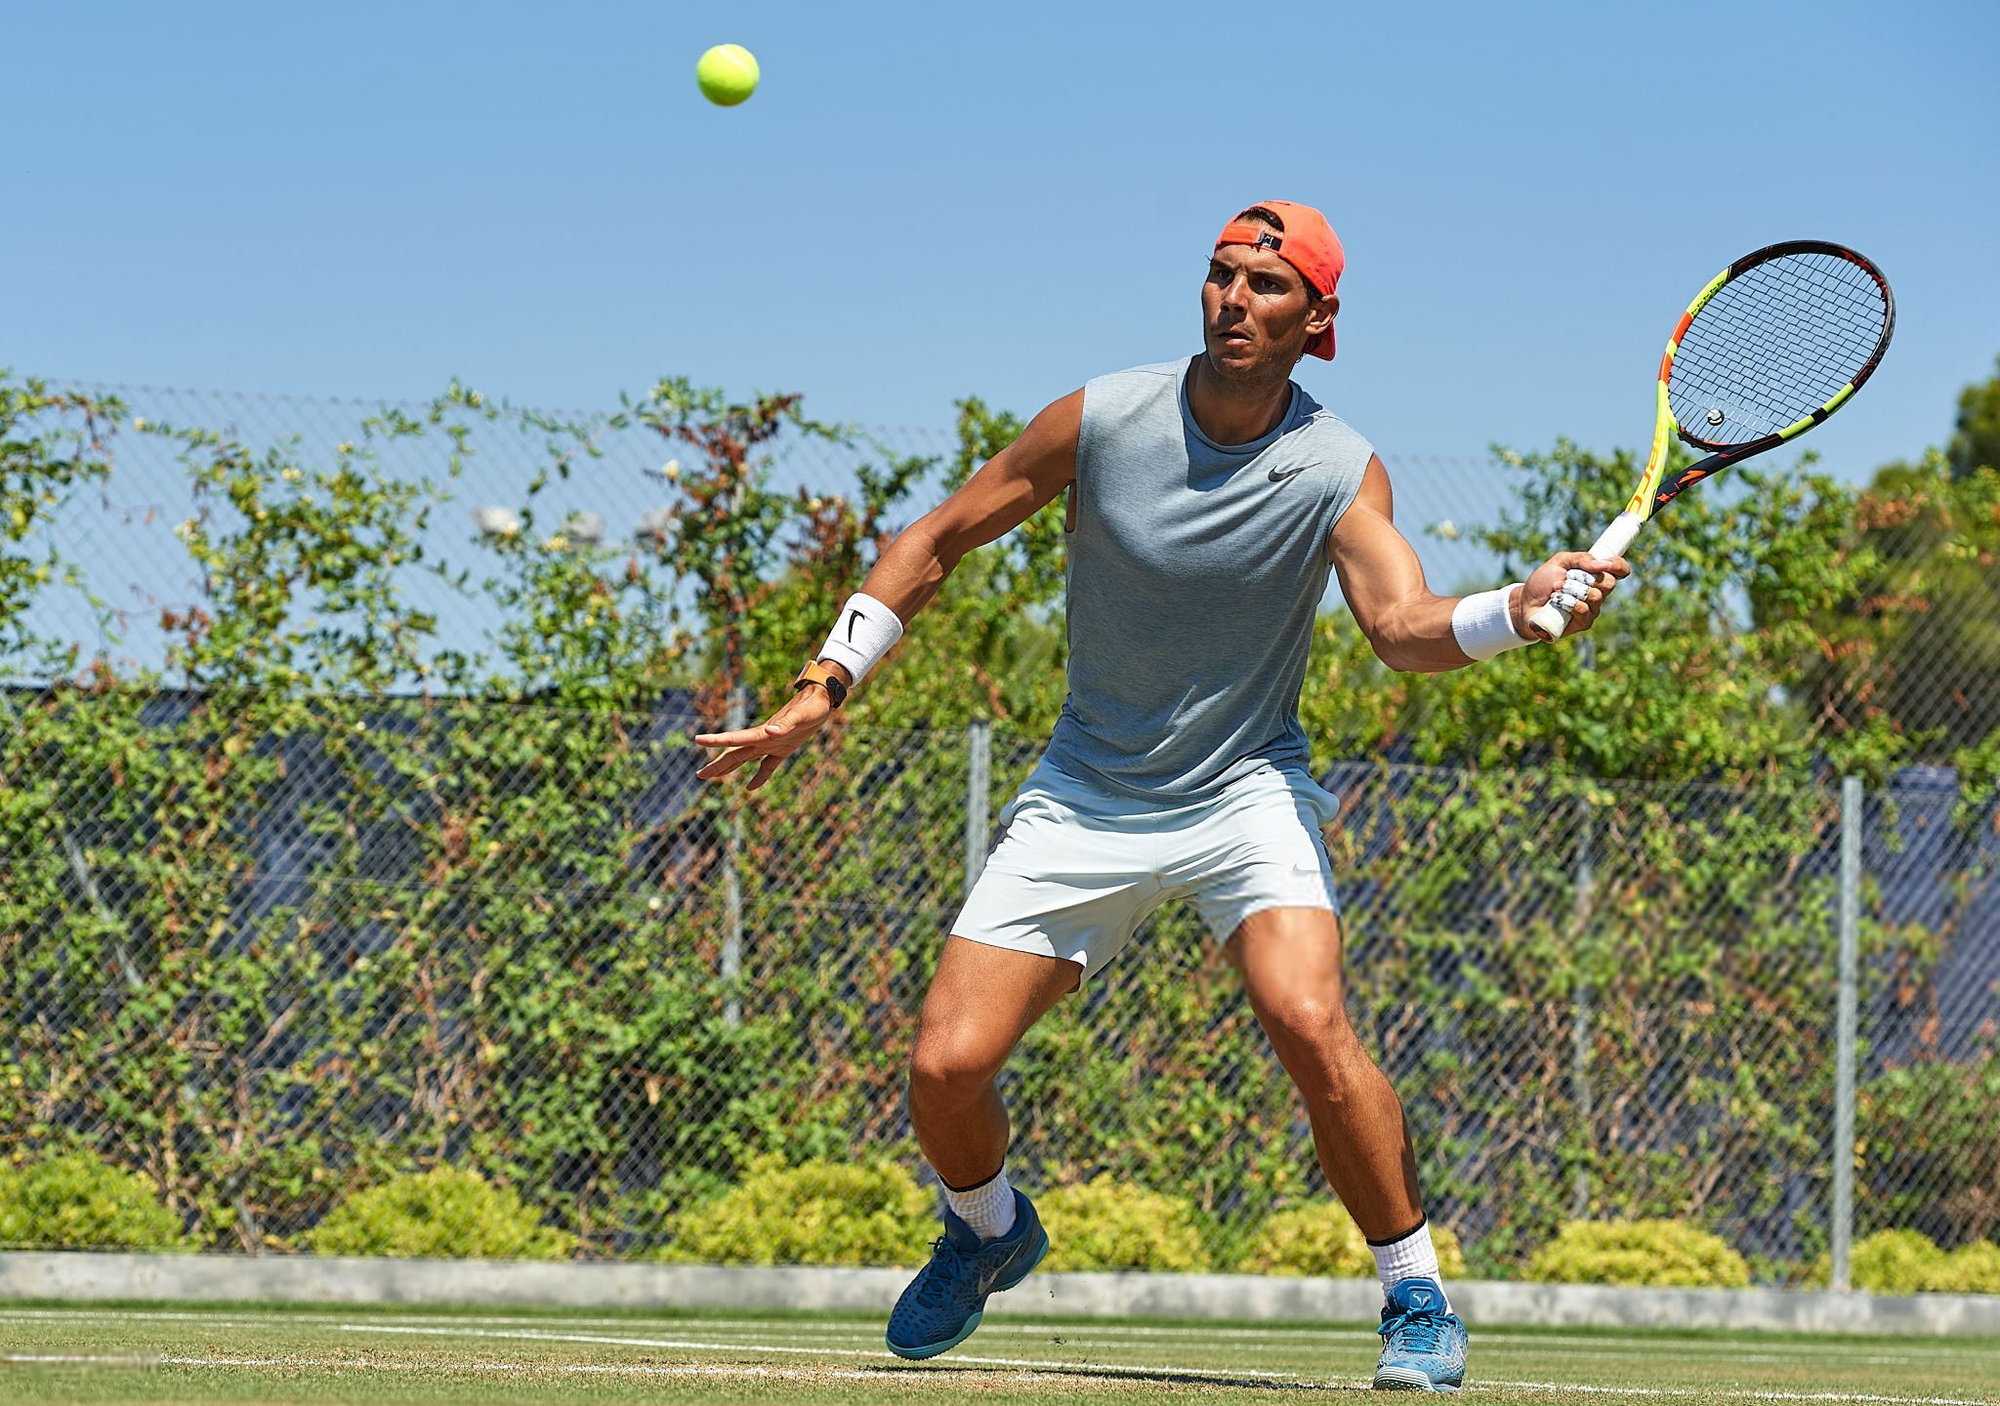 Tập luyện cật lực, Nadal đặt tham vọng ở cả Wimbledon 2018 - Ảnh 3.